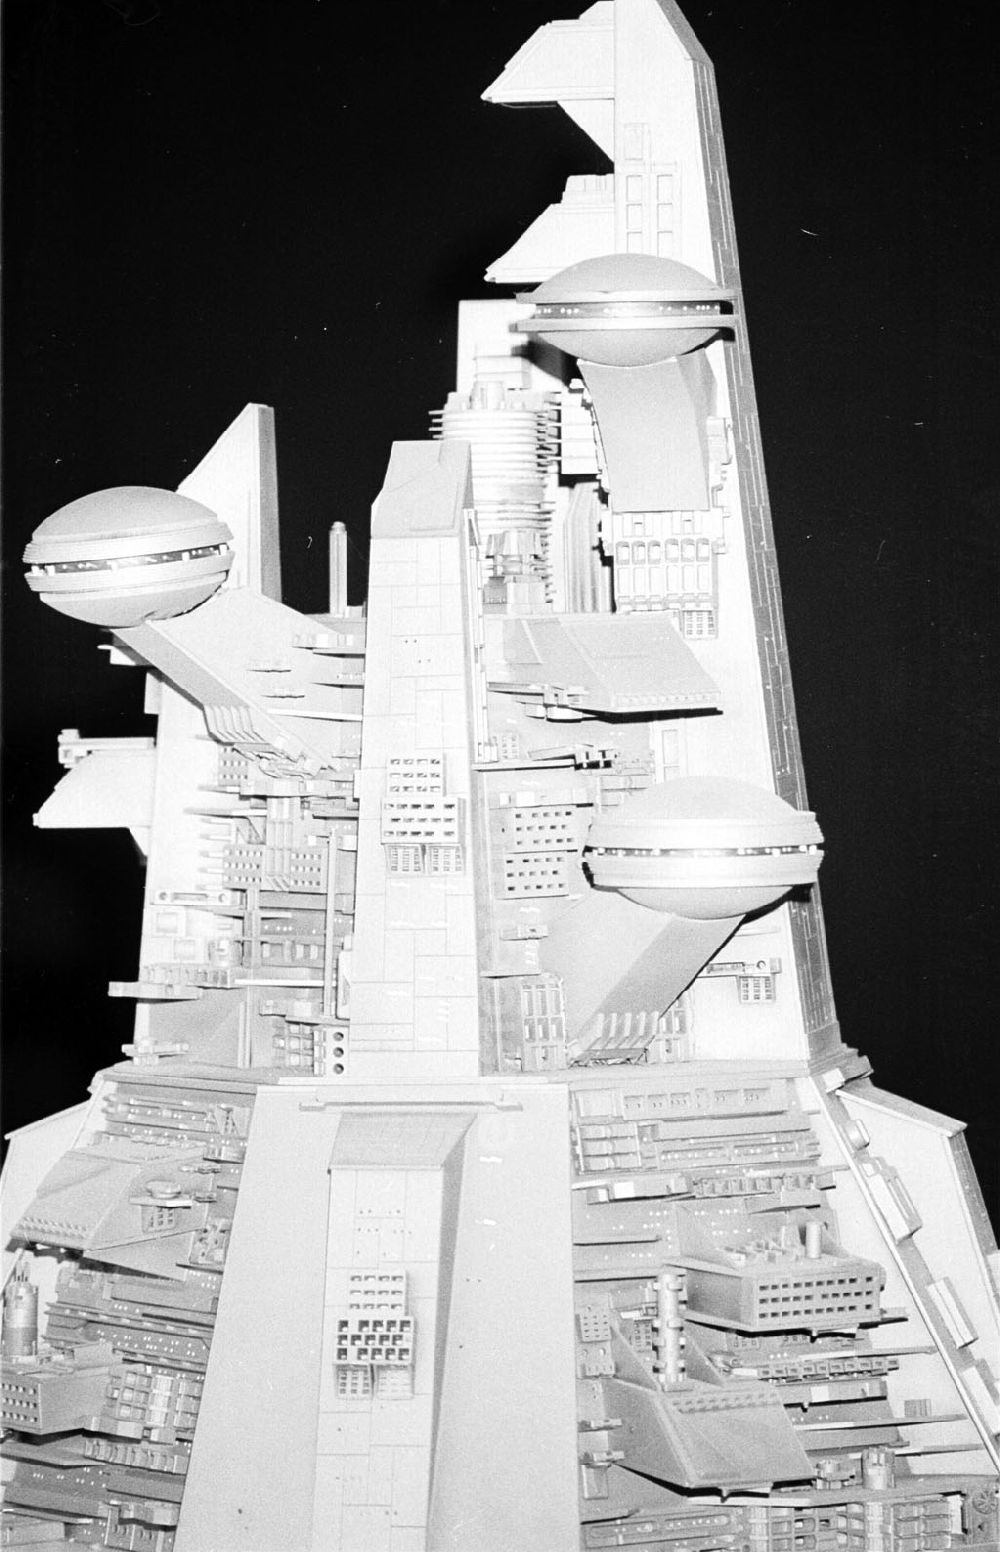 GDR picture archive: Berlin-Charlottenburg - Berlin-Berlin Hollywood - Modellaustellung am Funkturm/Mondfahrzeug, Raumschiff Ausserirdischer 2.11.9